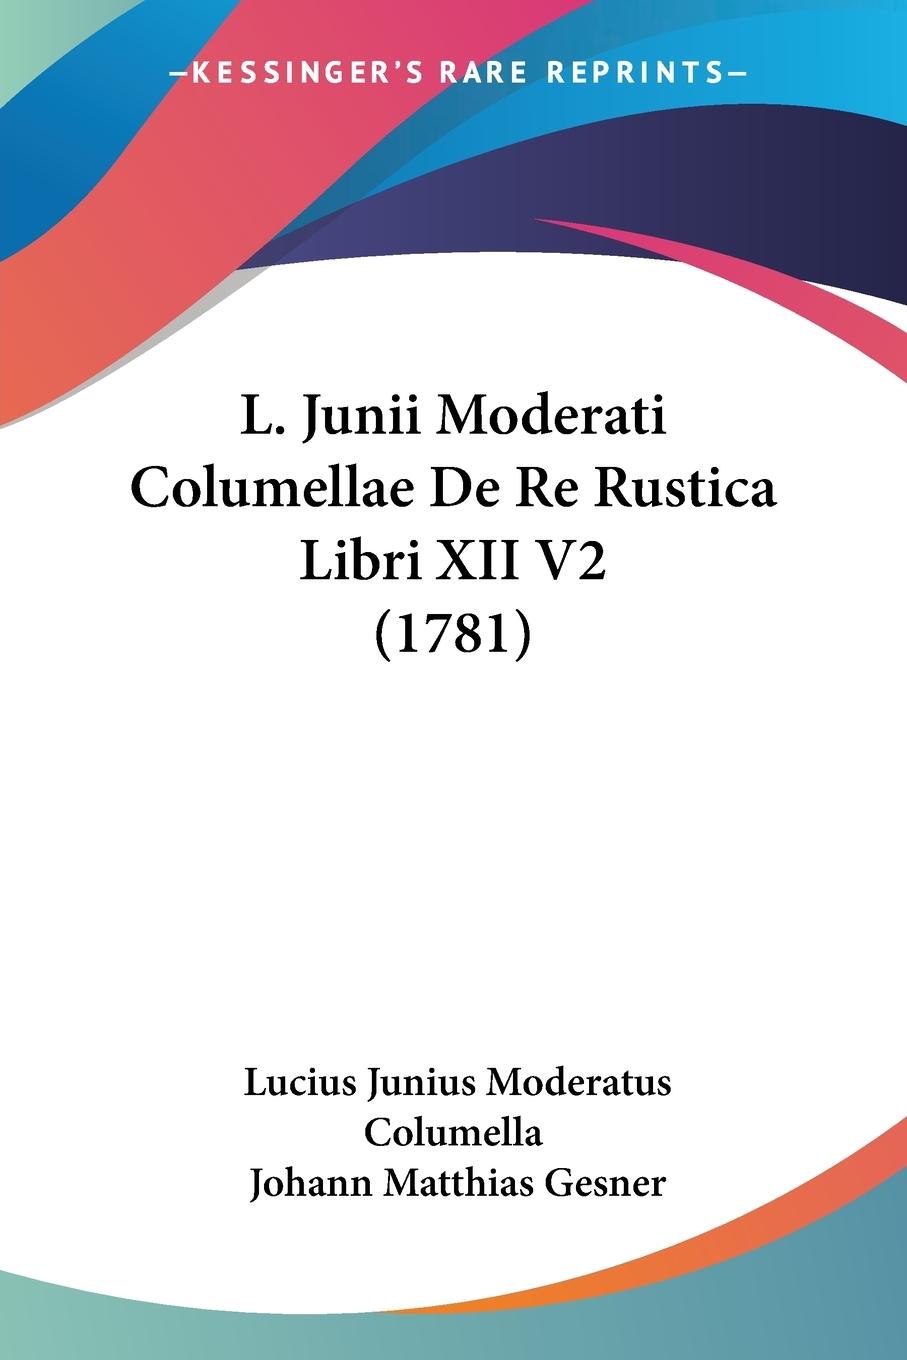 L. Junii Moderati Columellae De Re Rustica Libri XII V2 (1781) - Columella, Lucius Junius Moderatus